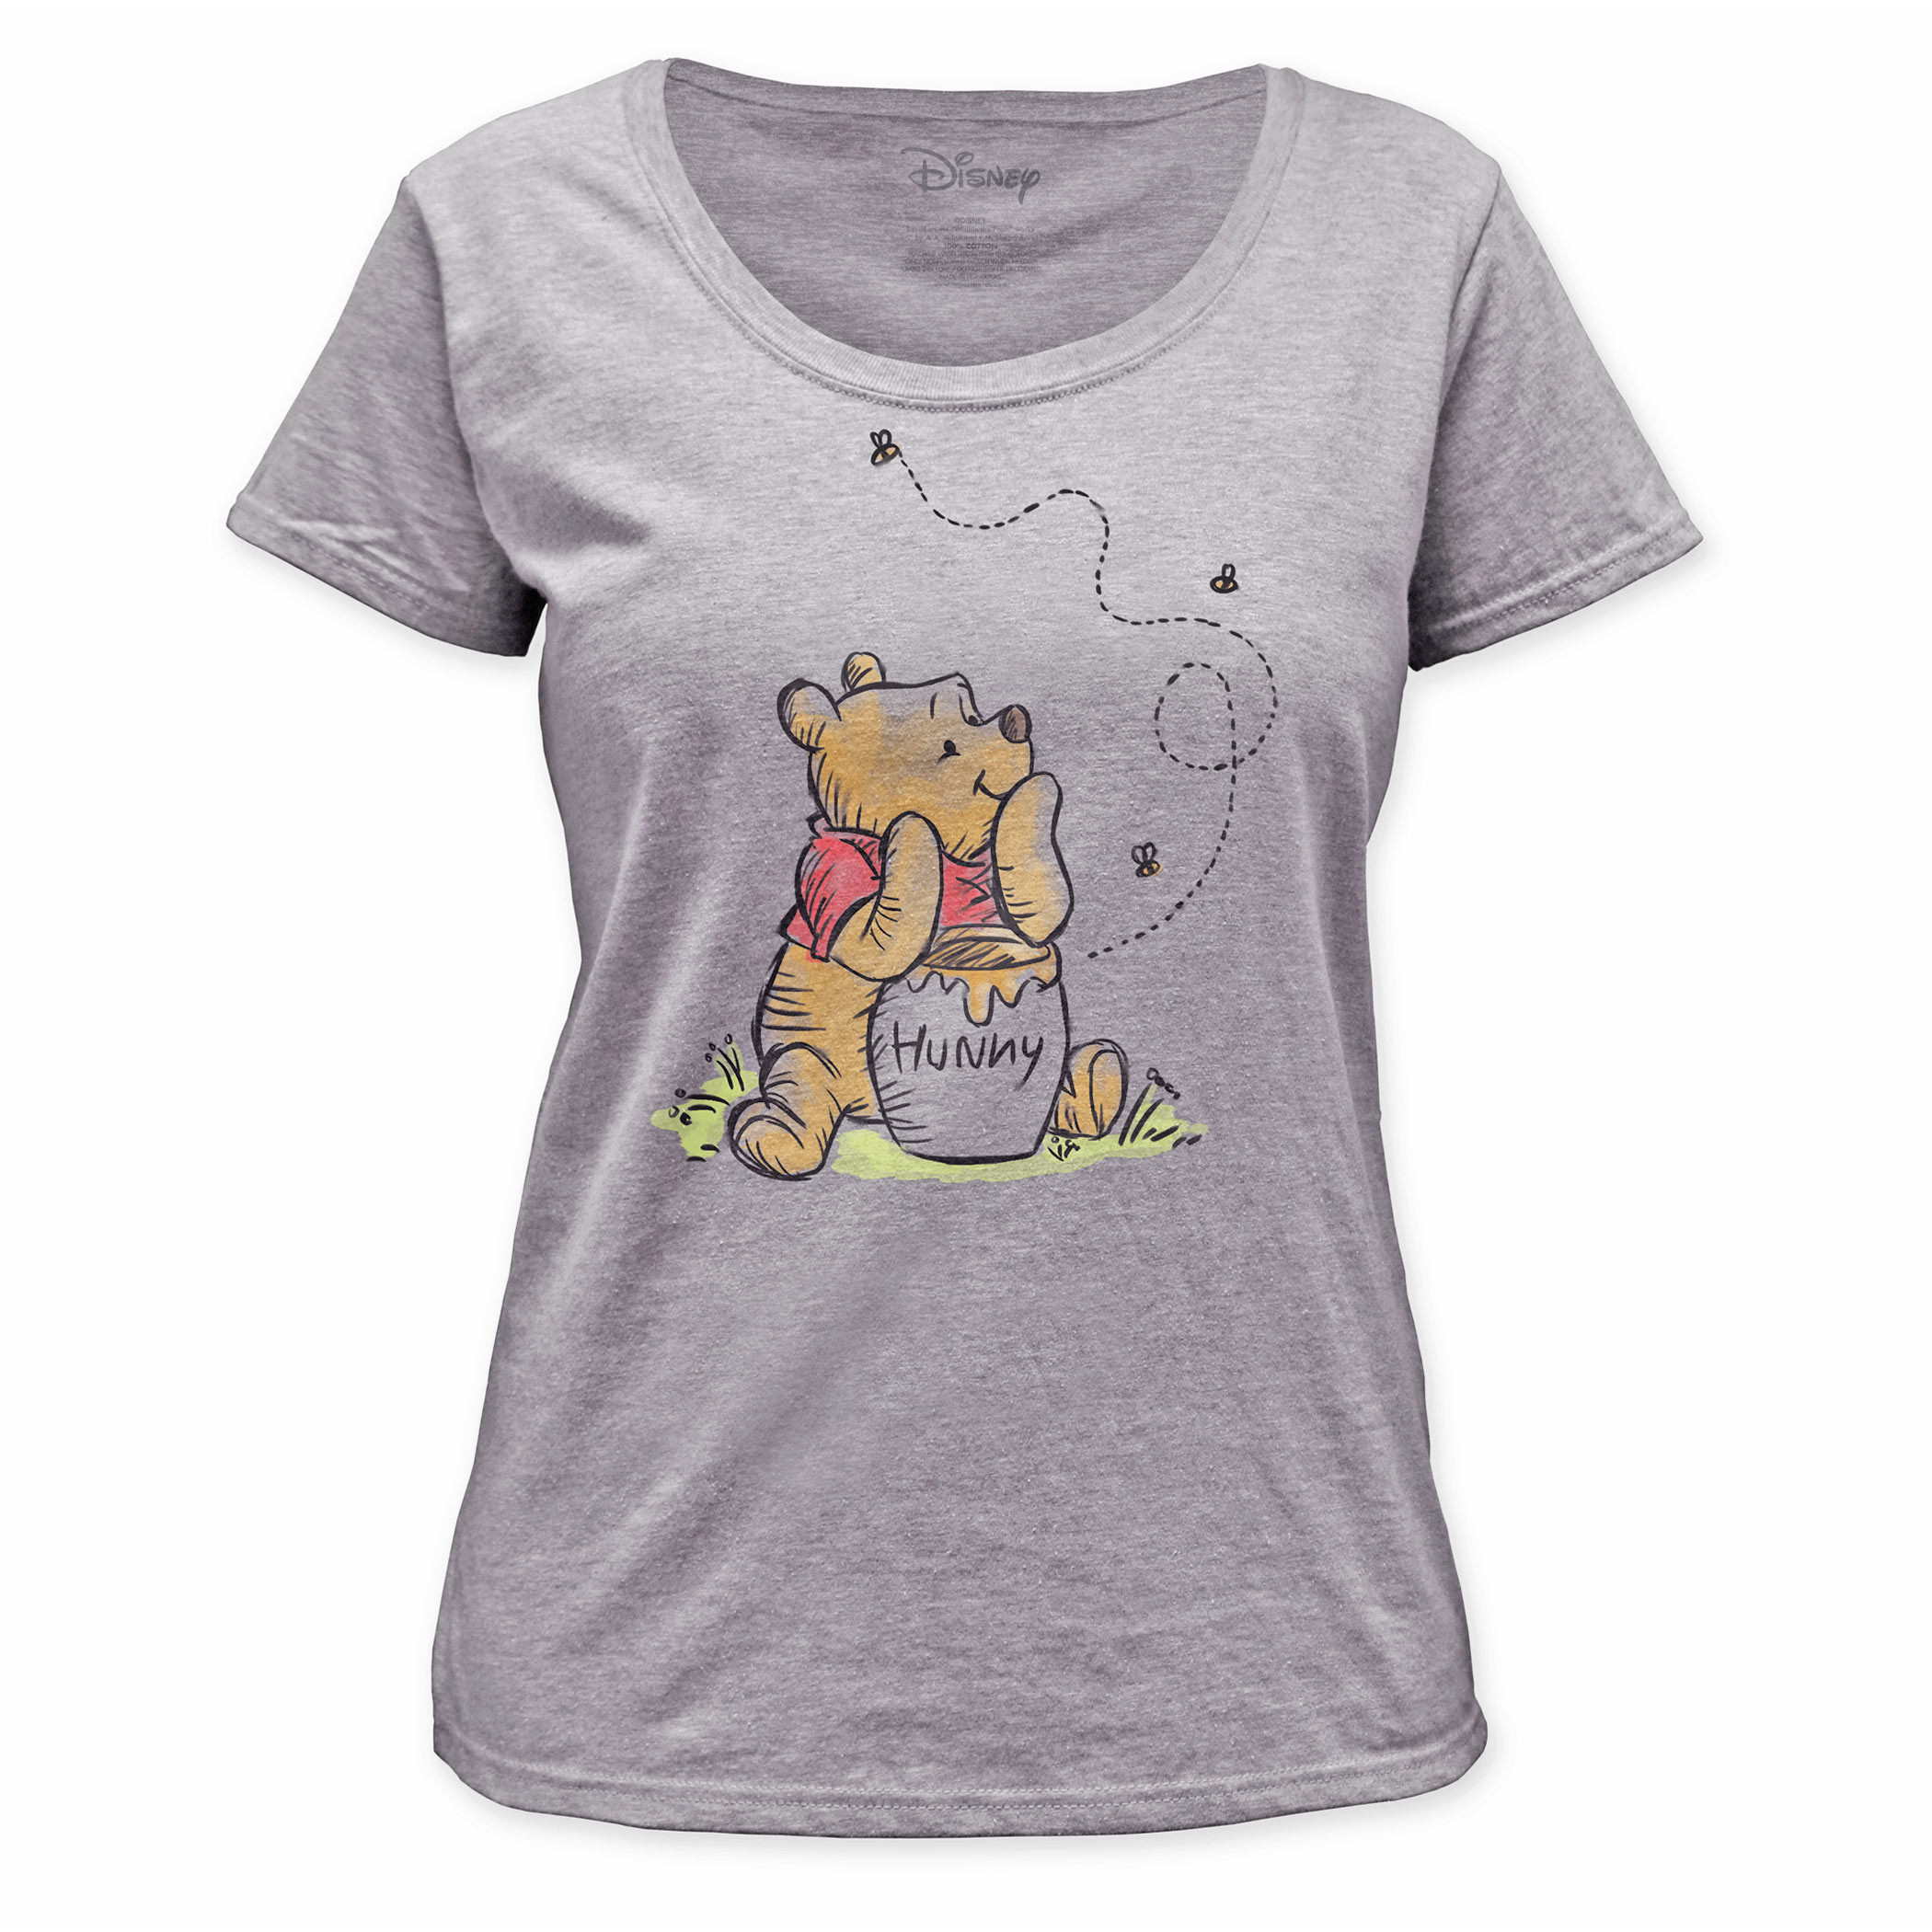 Winnie the Pooh Honey Jar Women's White T-Shirt